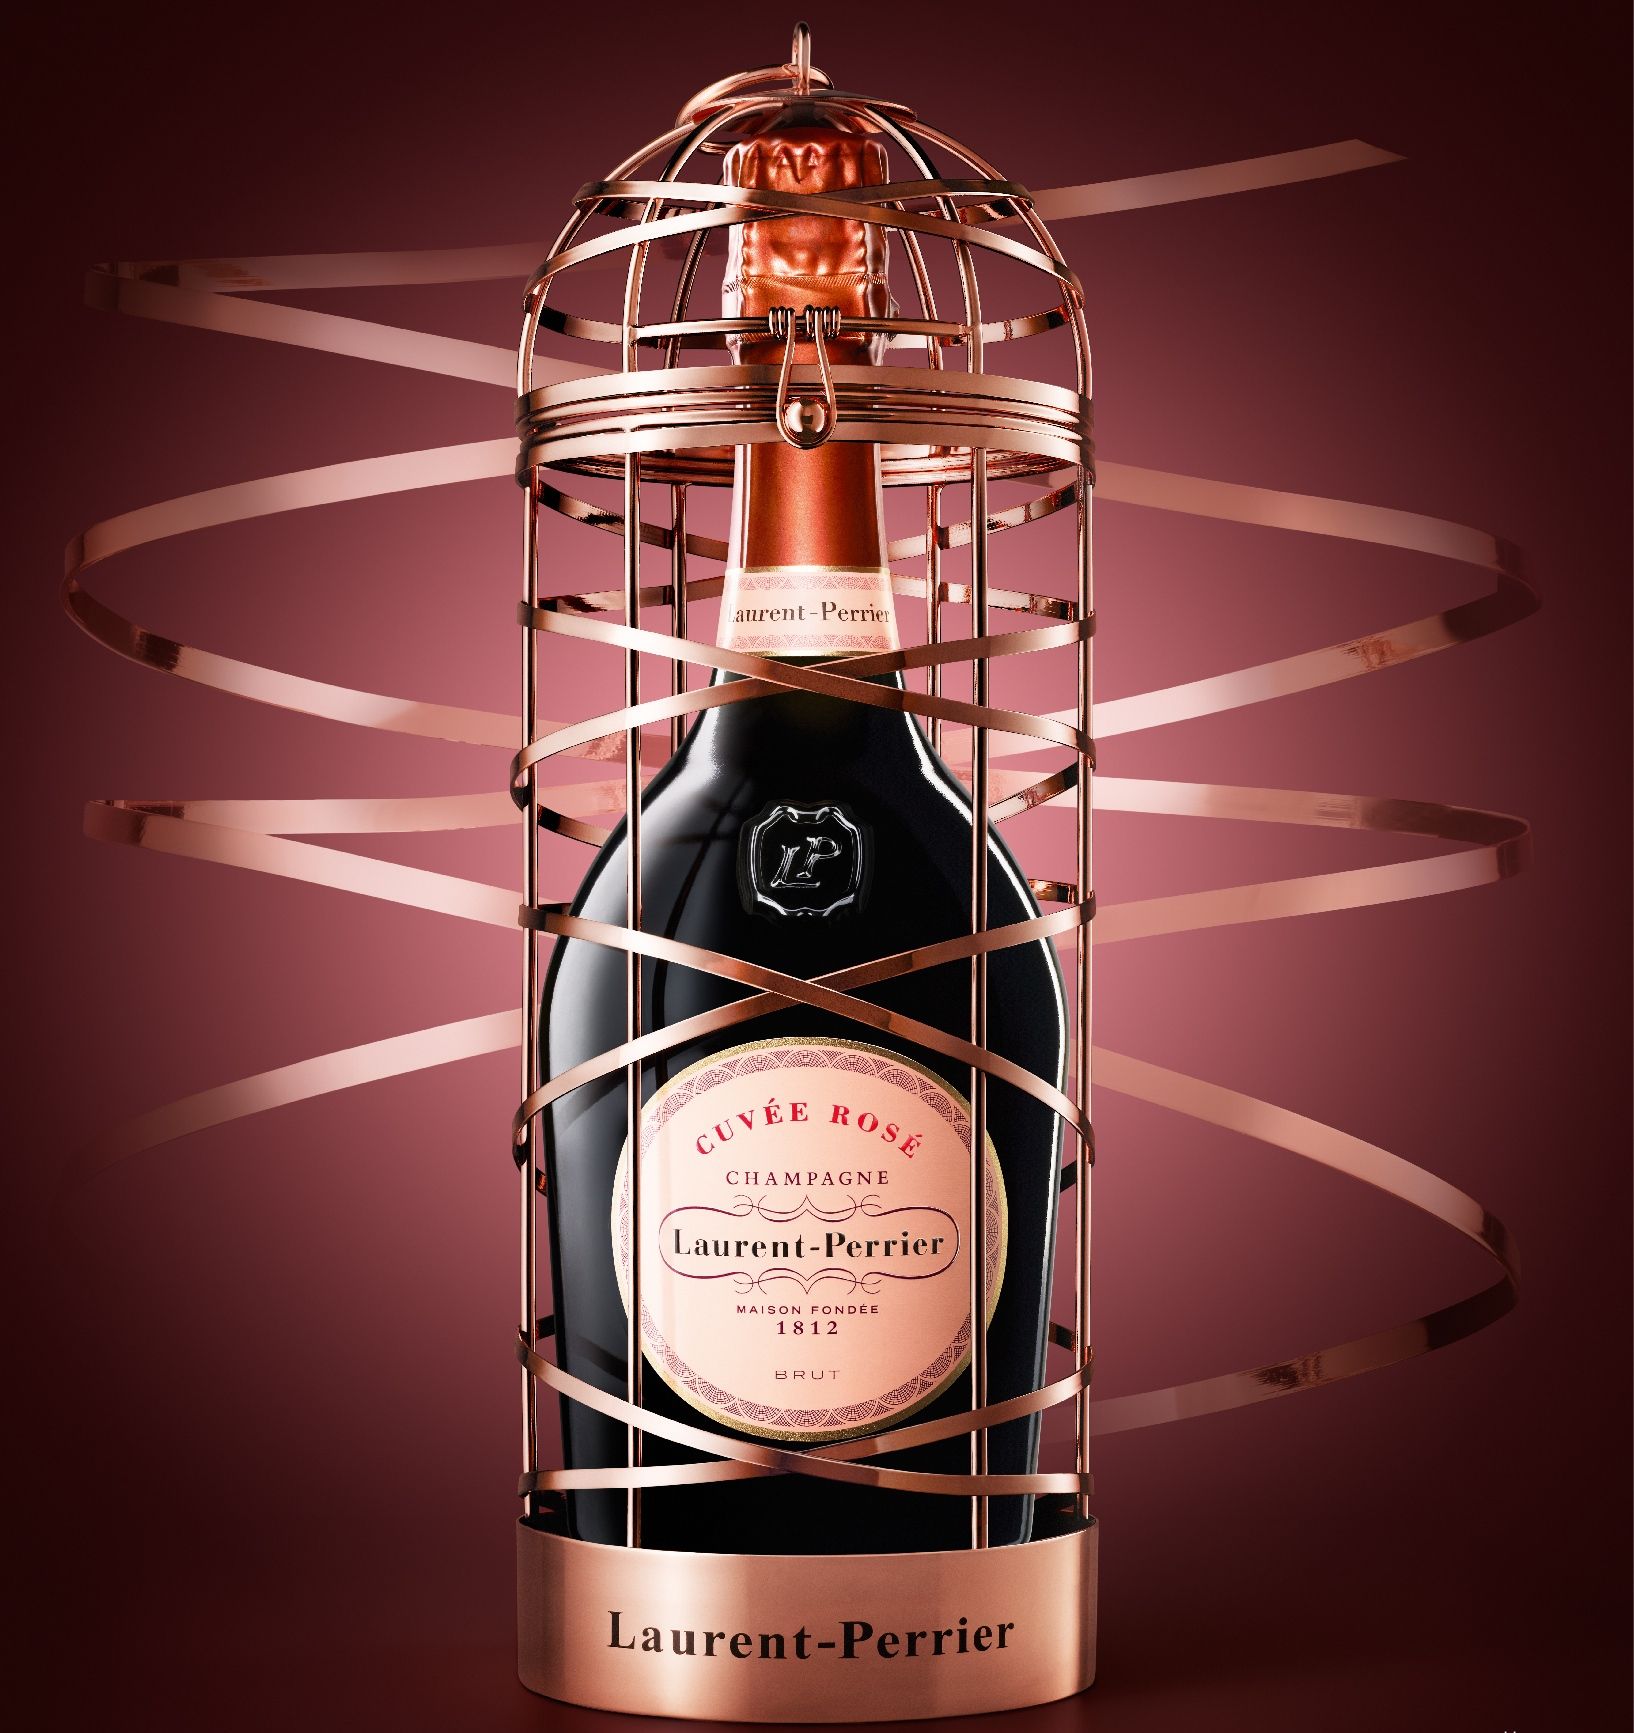 Champagne Veuve Clicquot Brut Carte Jaune sous Coffret Arrow - La